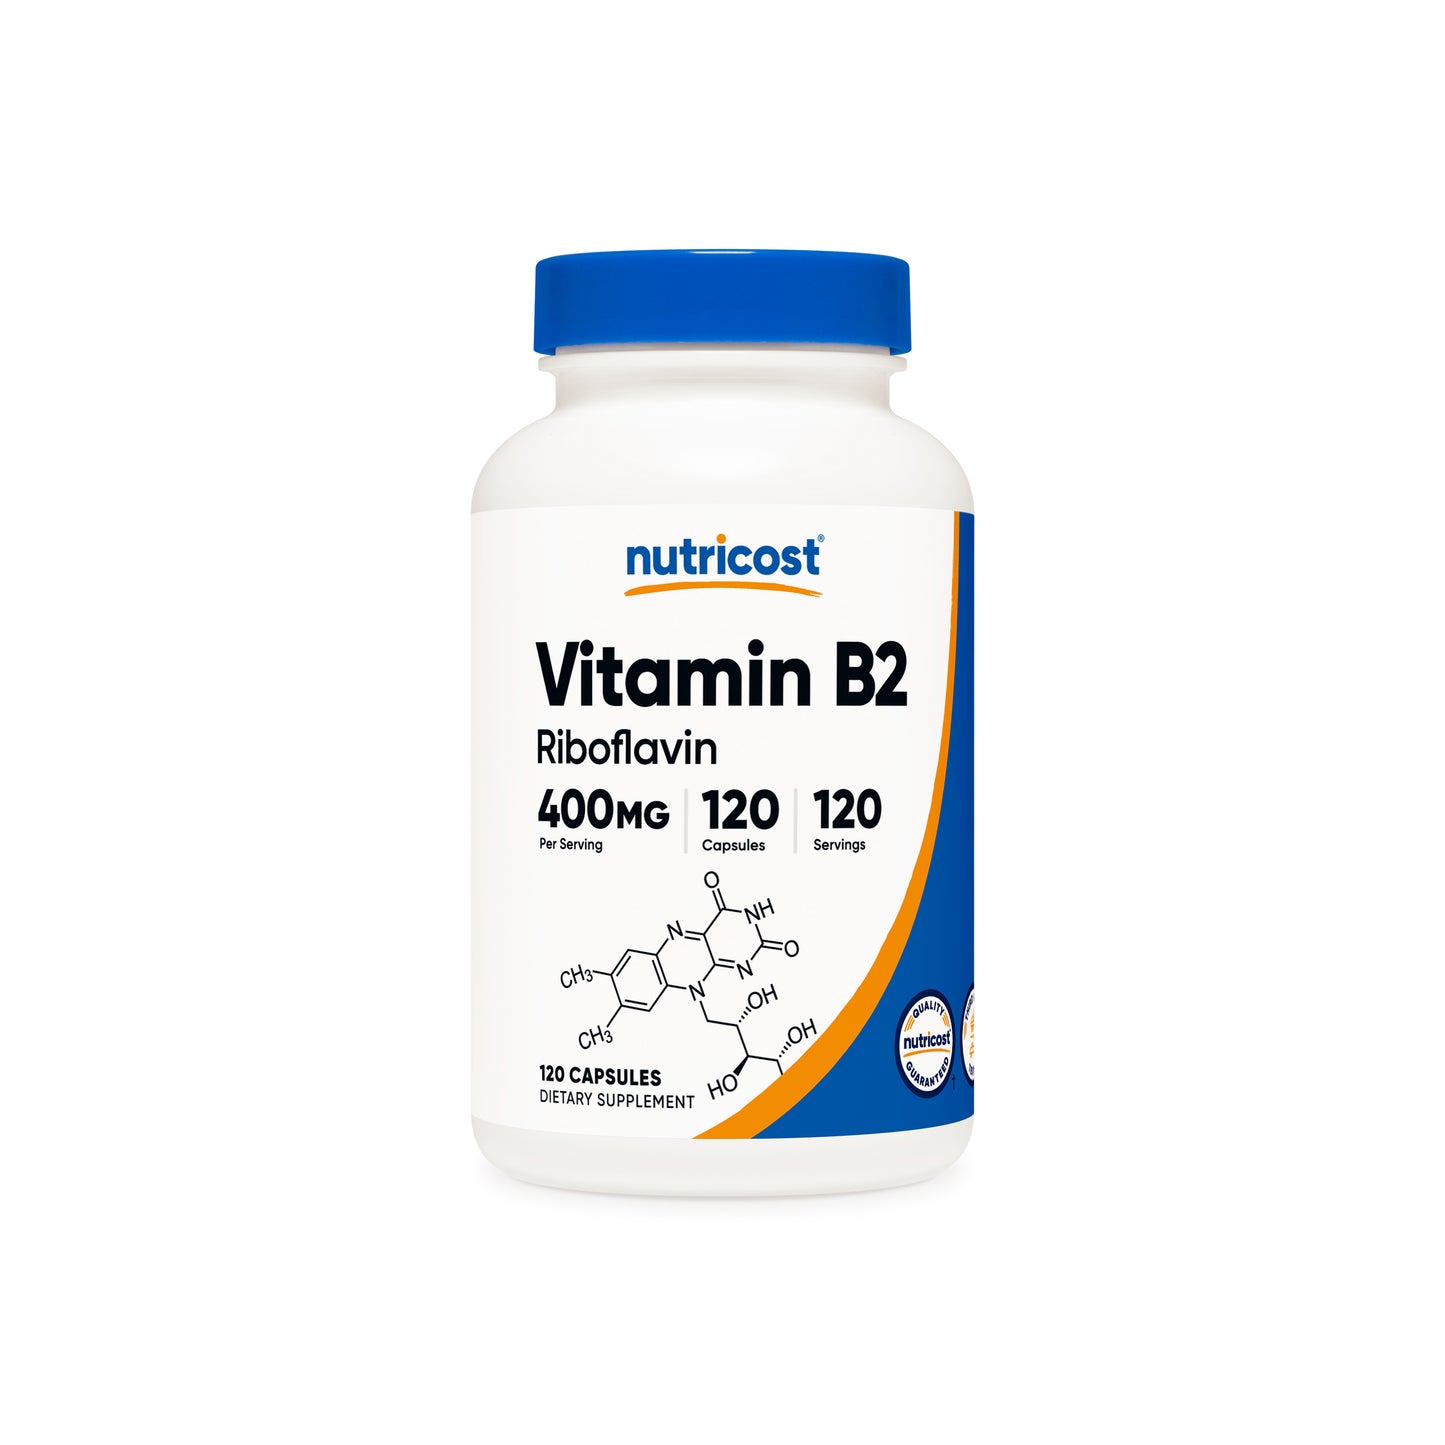 Nutricost Vitamin B2 Riboflavin Capsules